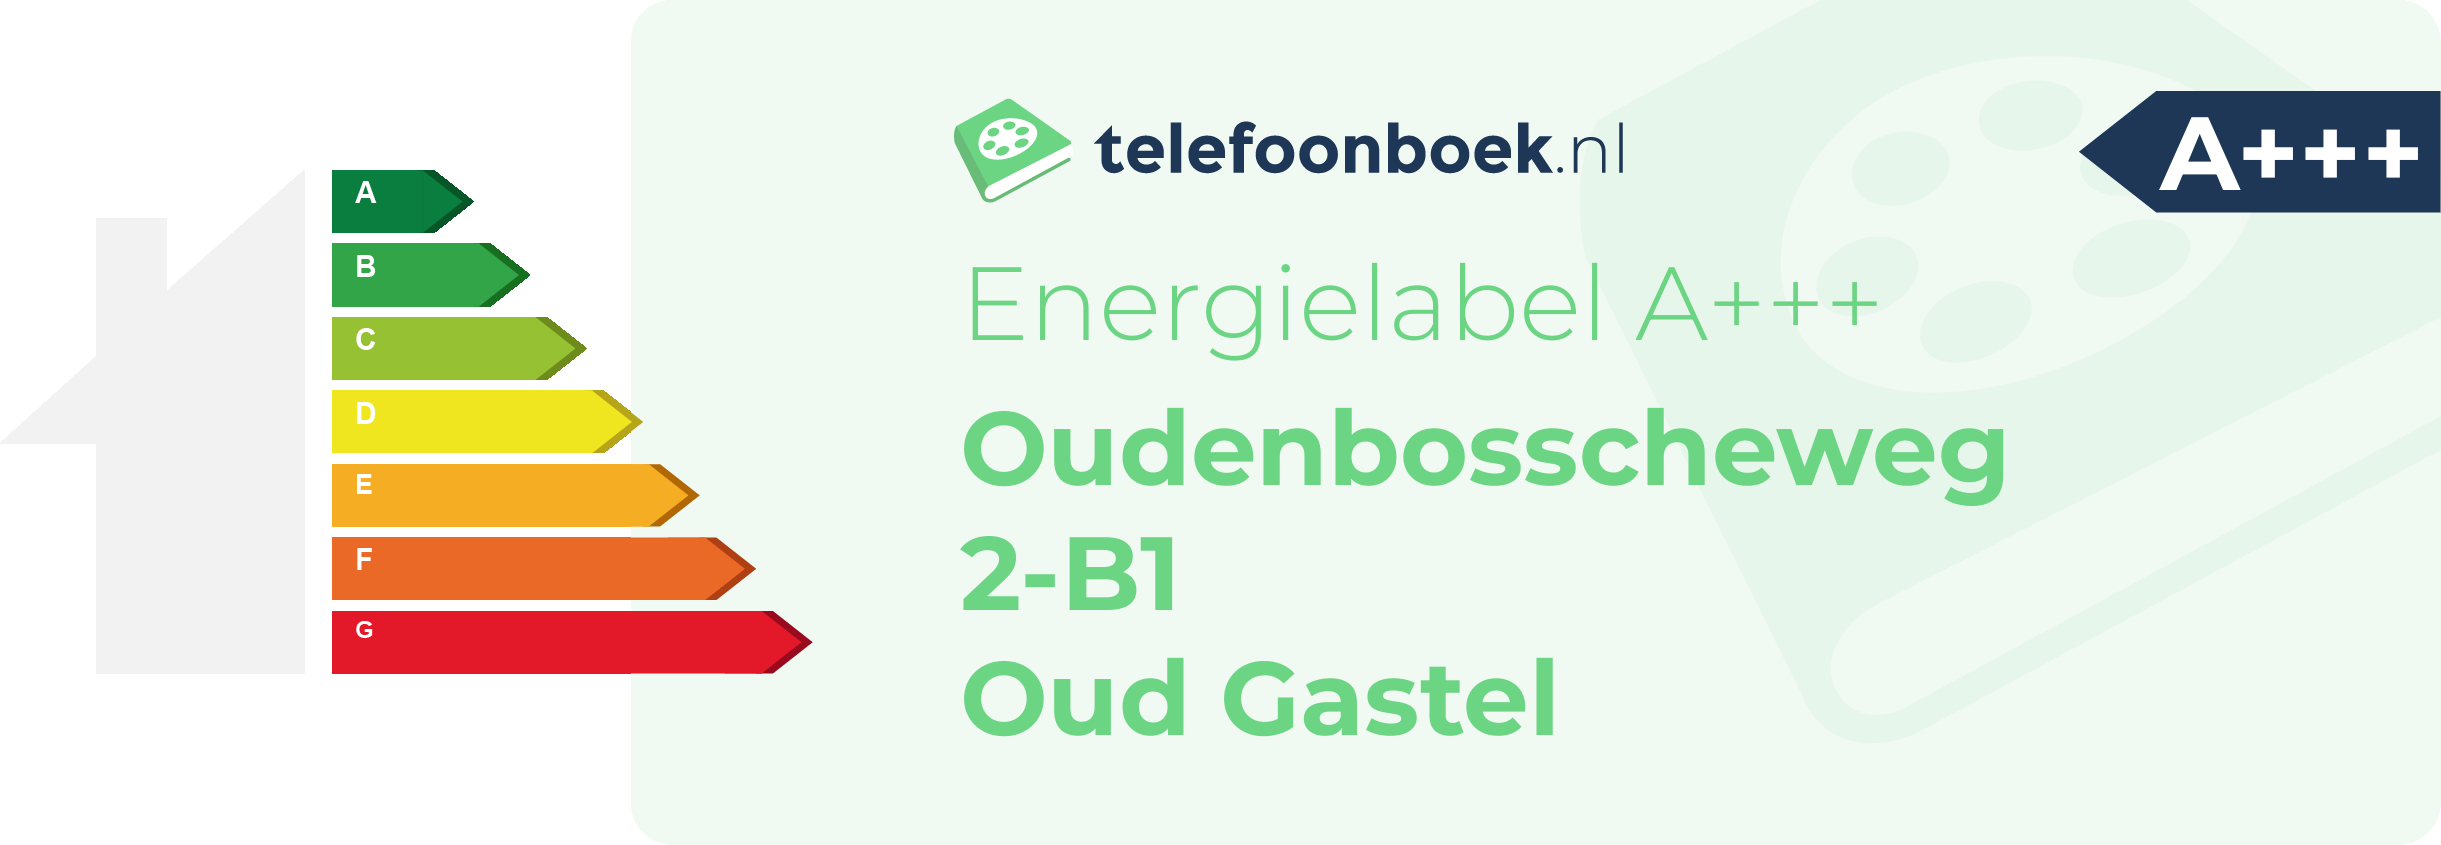 Energielabel Oudenbosscheweg 2-B1 Oud Gastel